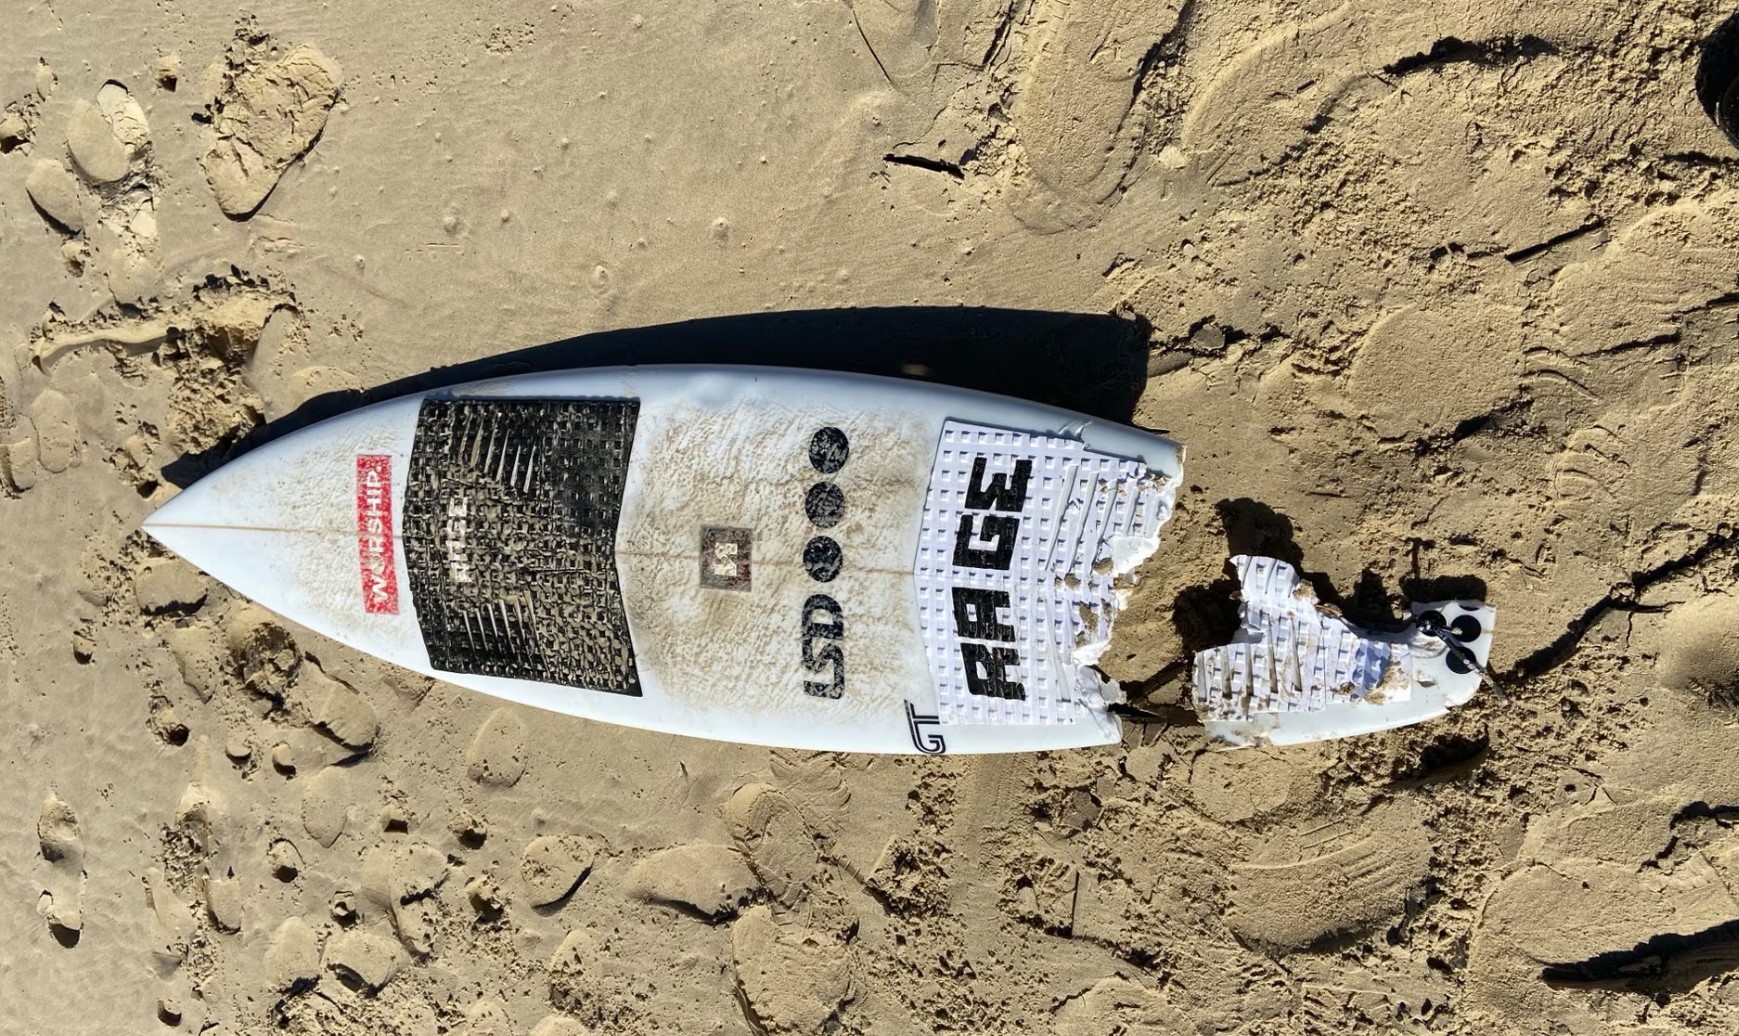 Αυστραλία: Πόδι σέρφερ ξεβράστηκε στην ακτή έπειτα από επίθεση καρχαρία